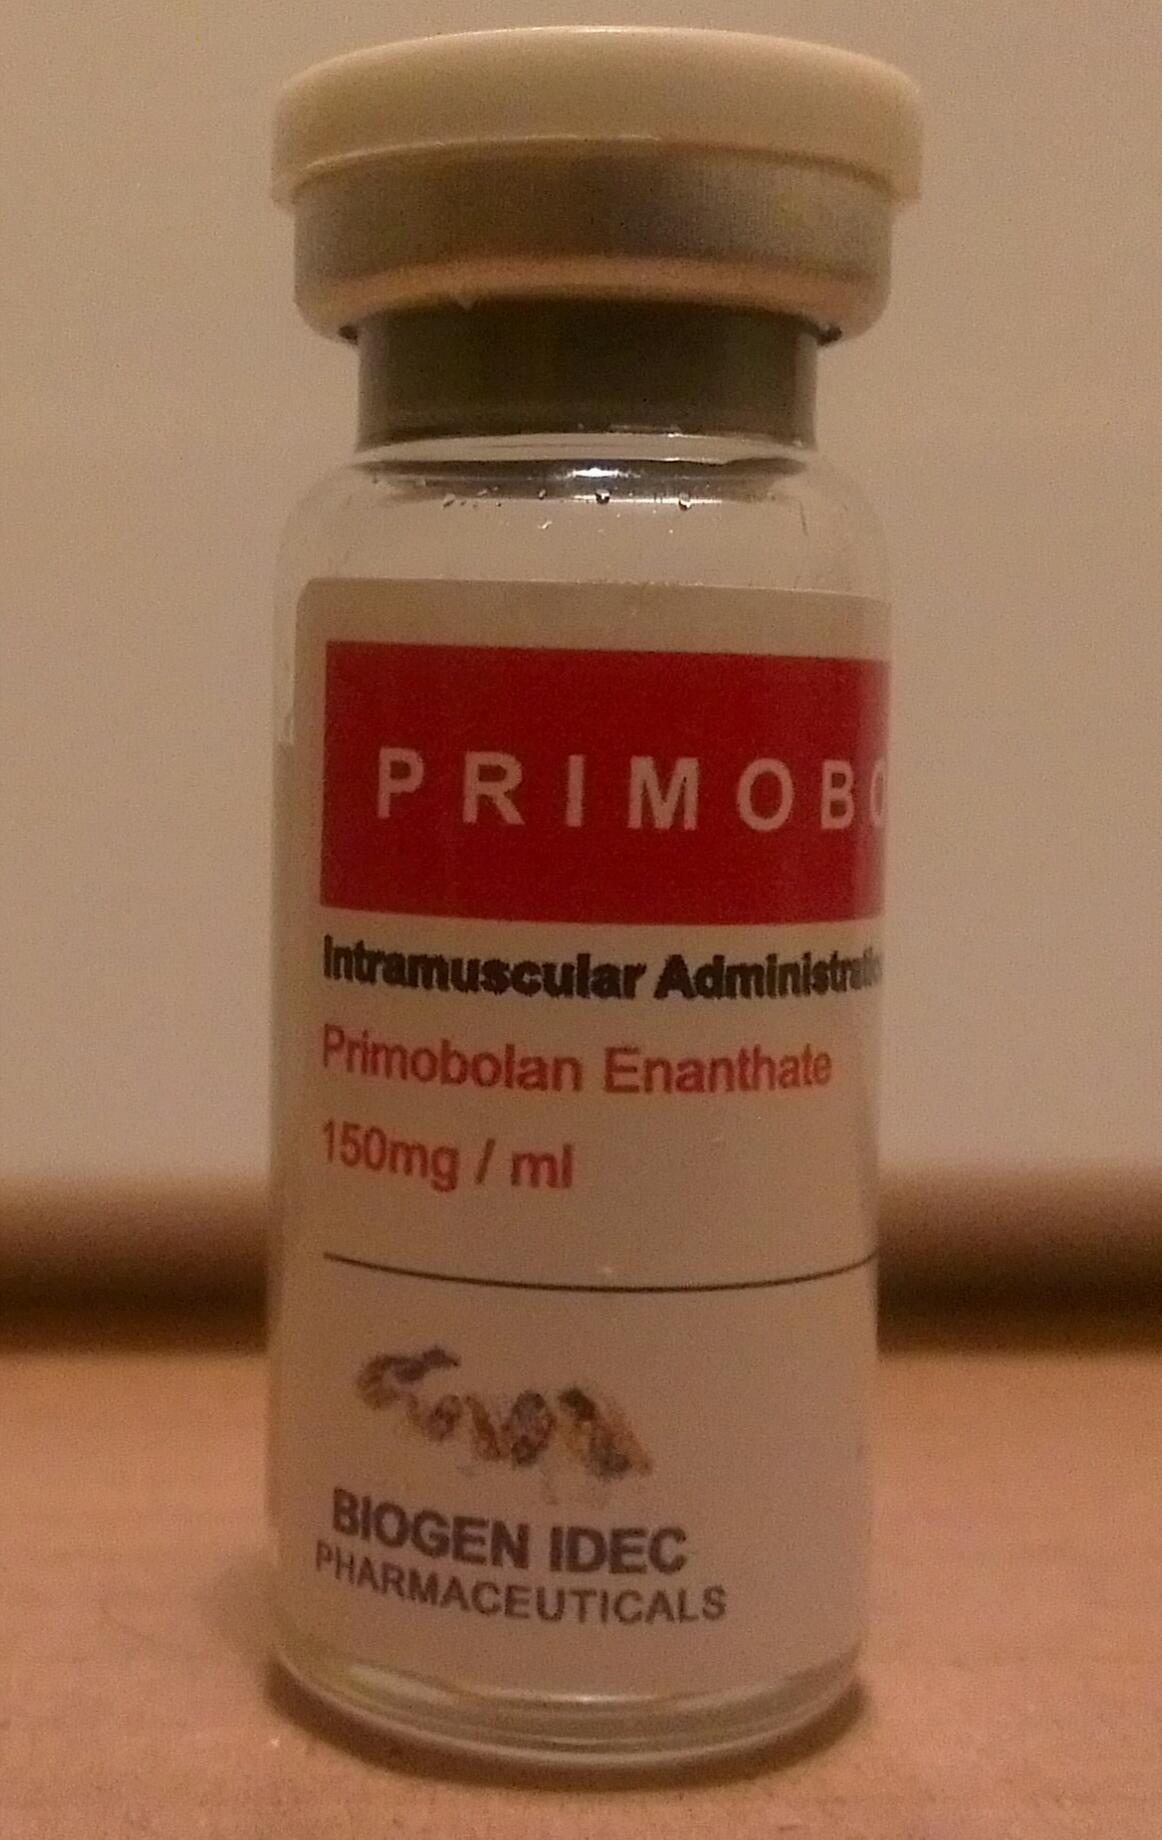 Primobol